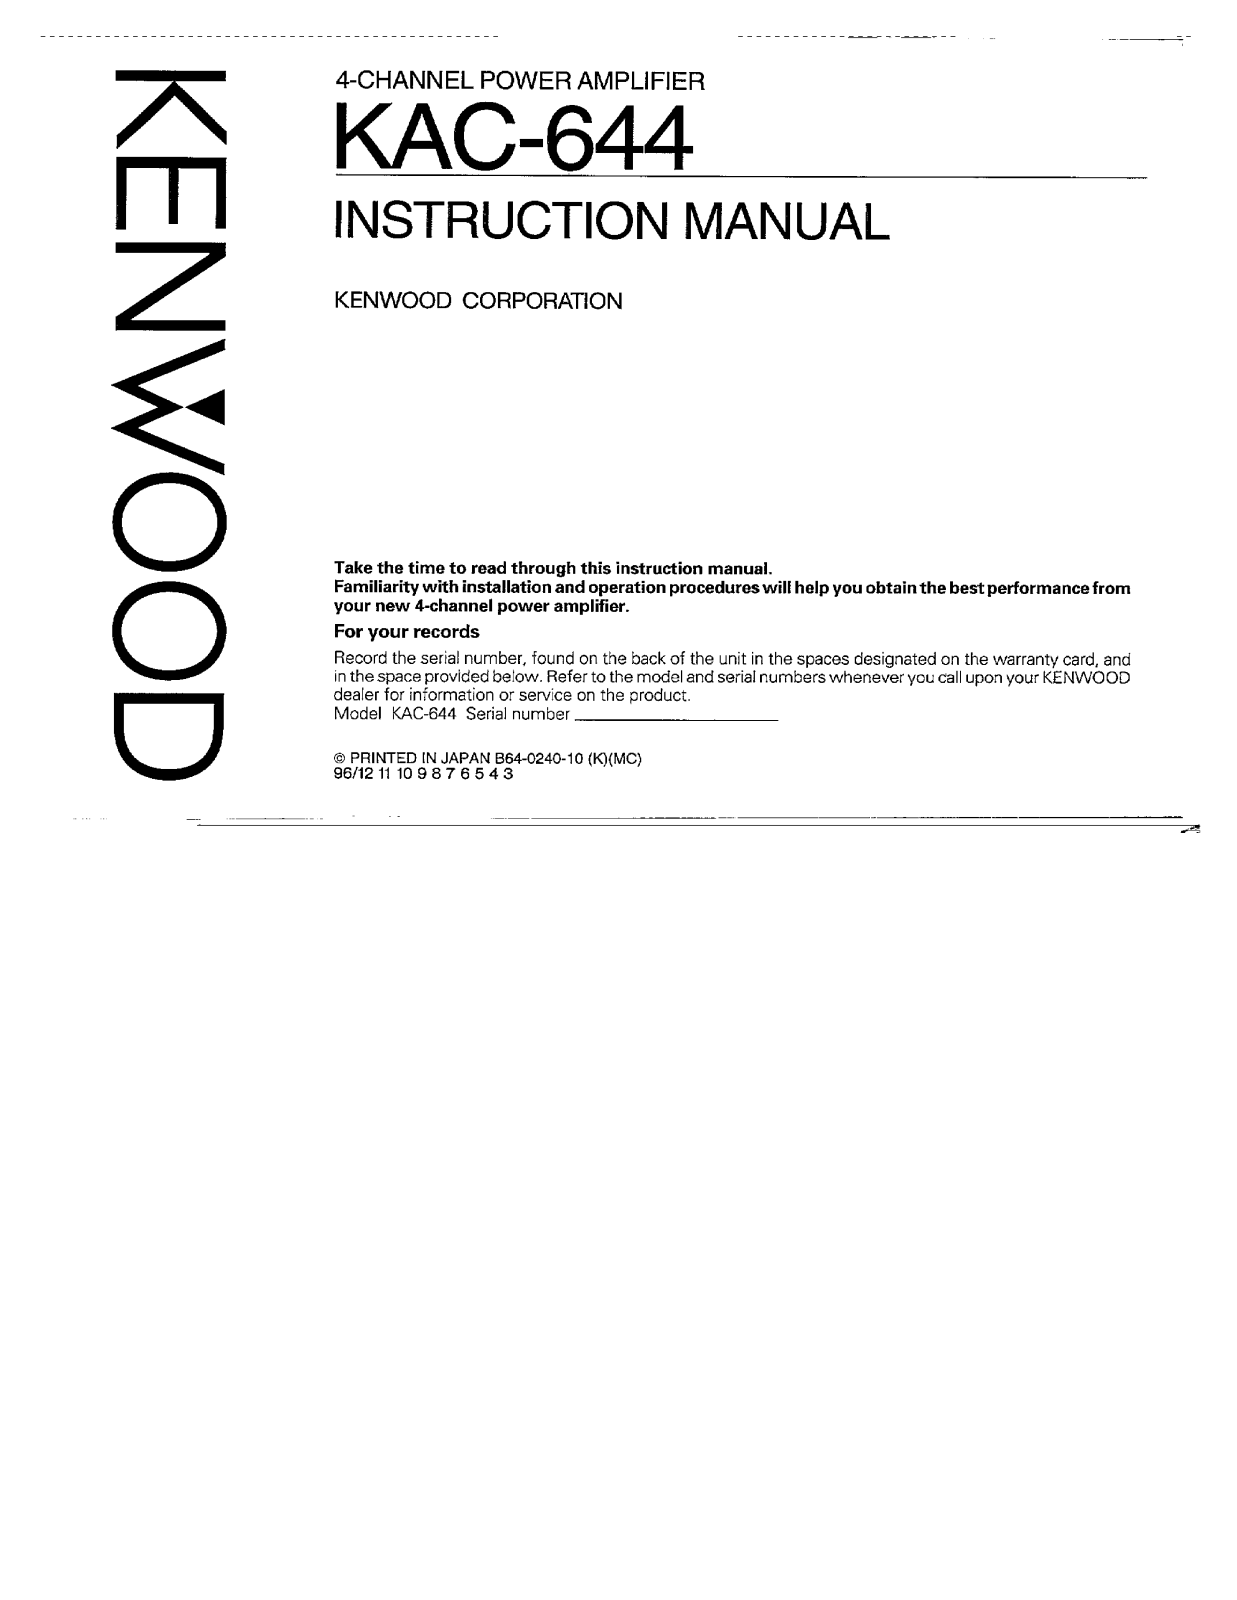 Kenwood KAC-644 Owner's Manual